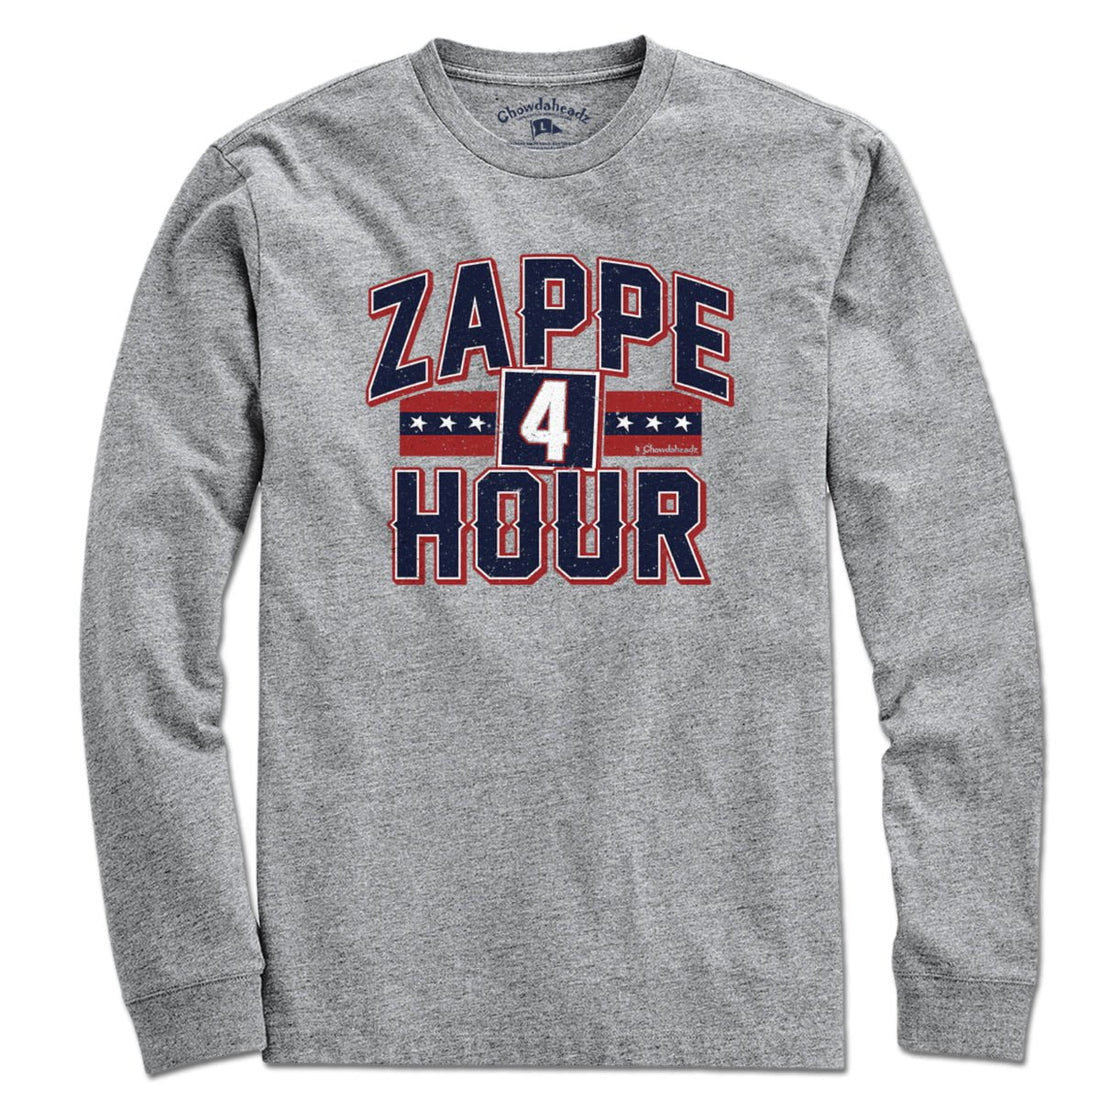 Zappe Hour T-Shirt - Chowdaheadz